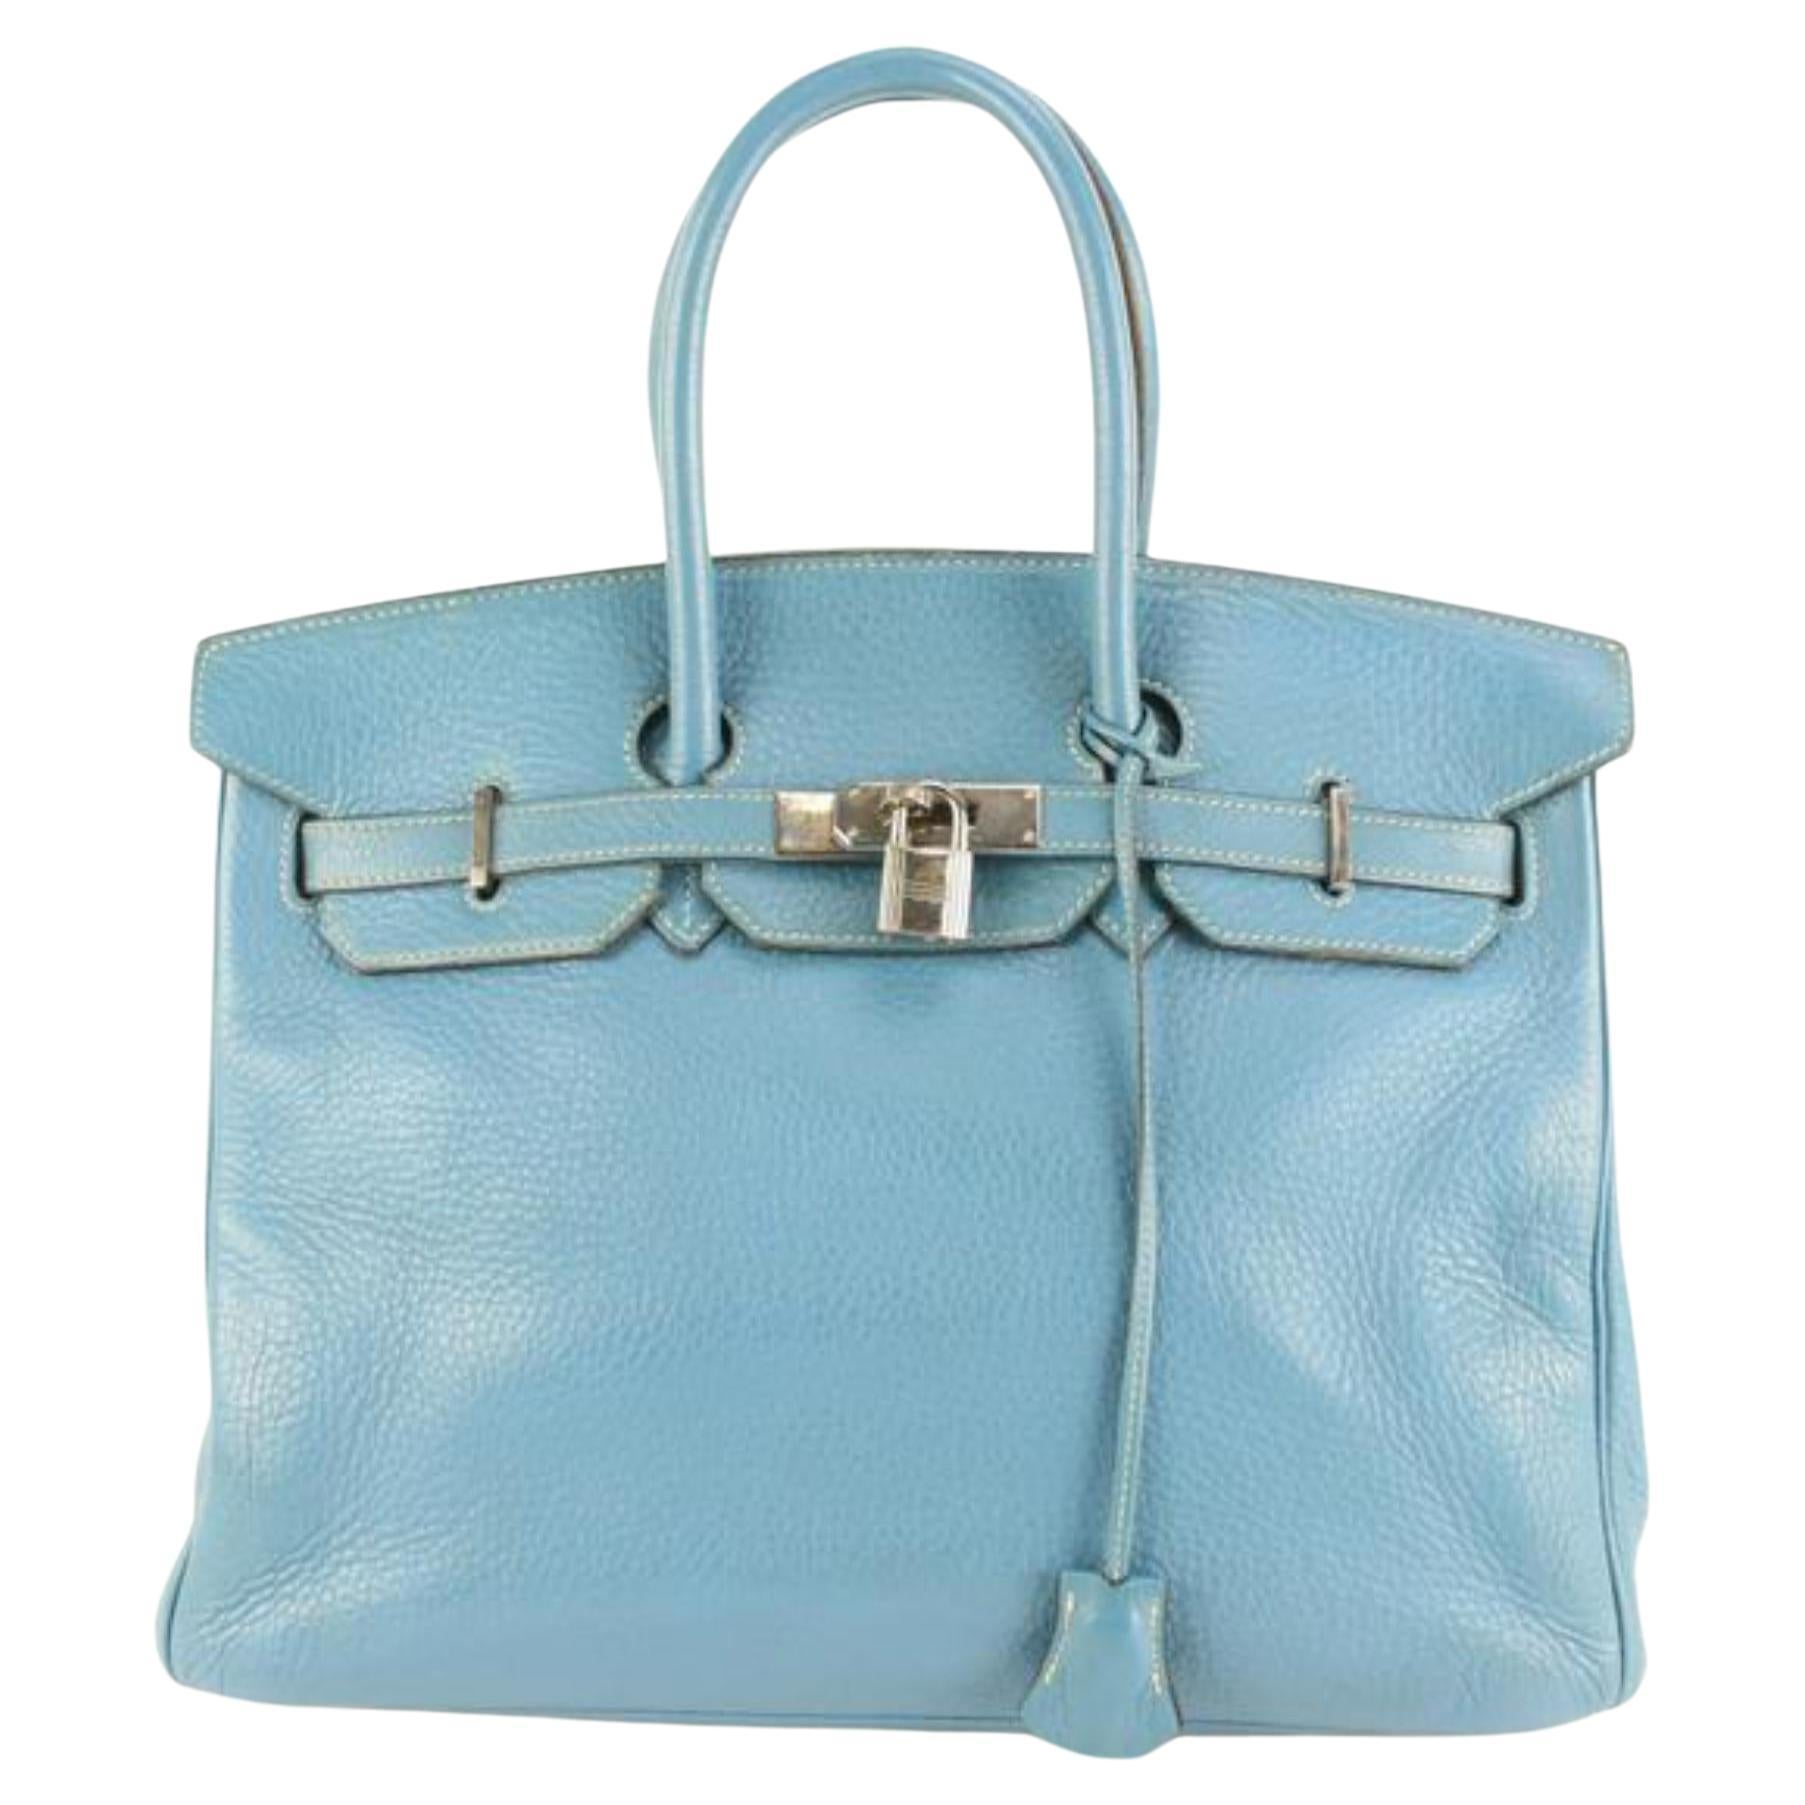 Hermes Togo Leather Birkin Bag 35 Blue Azur